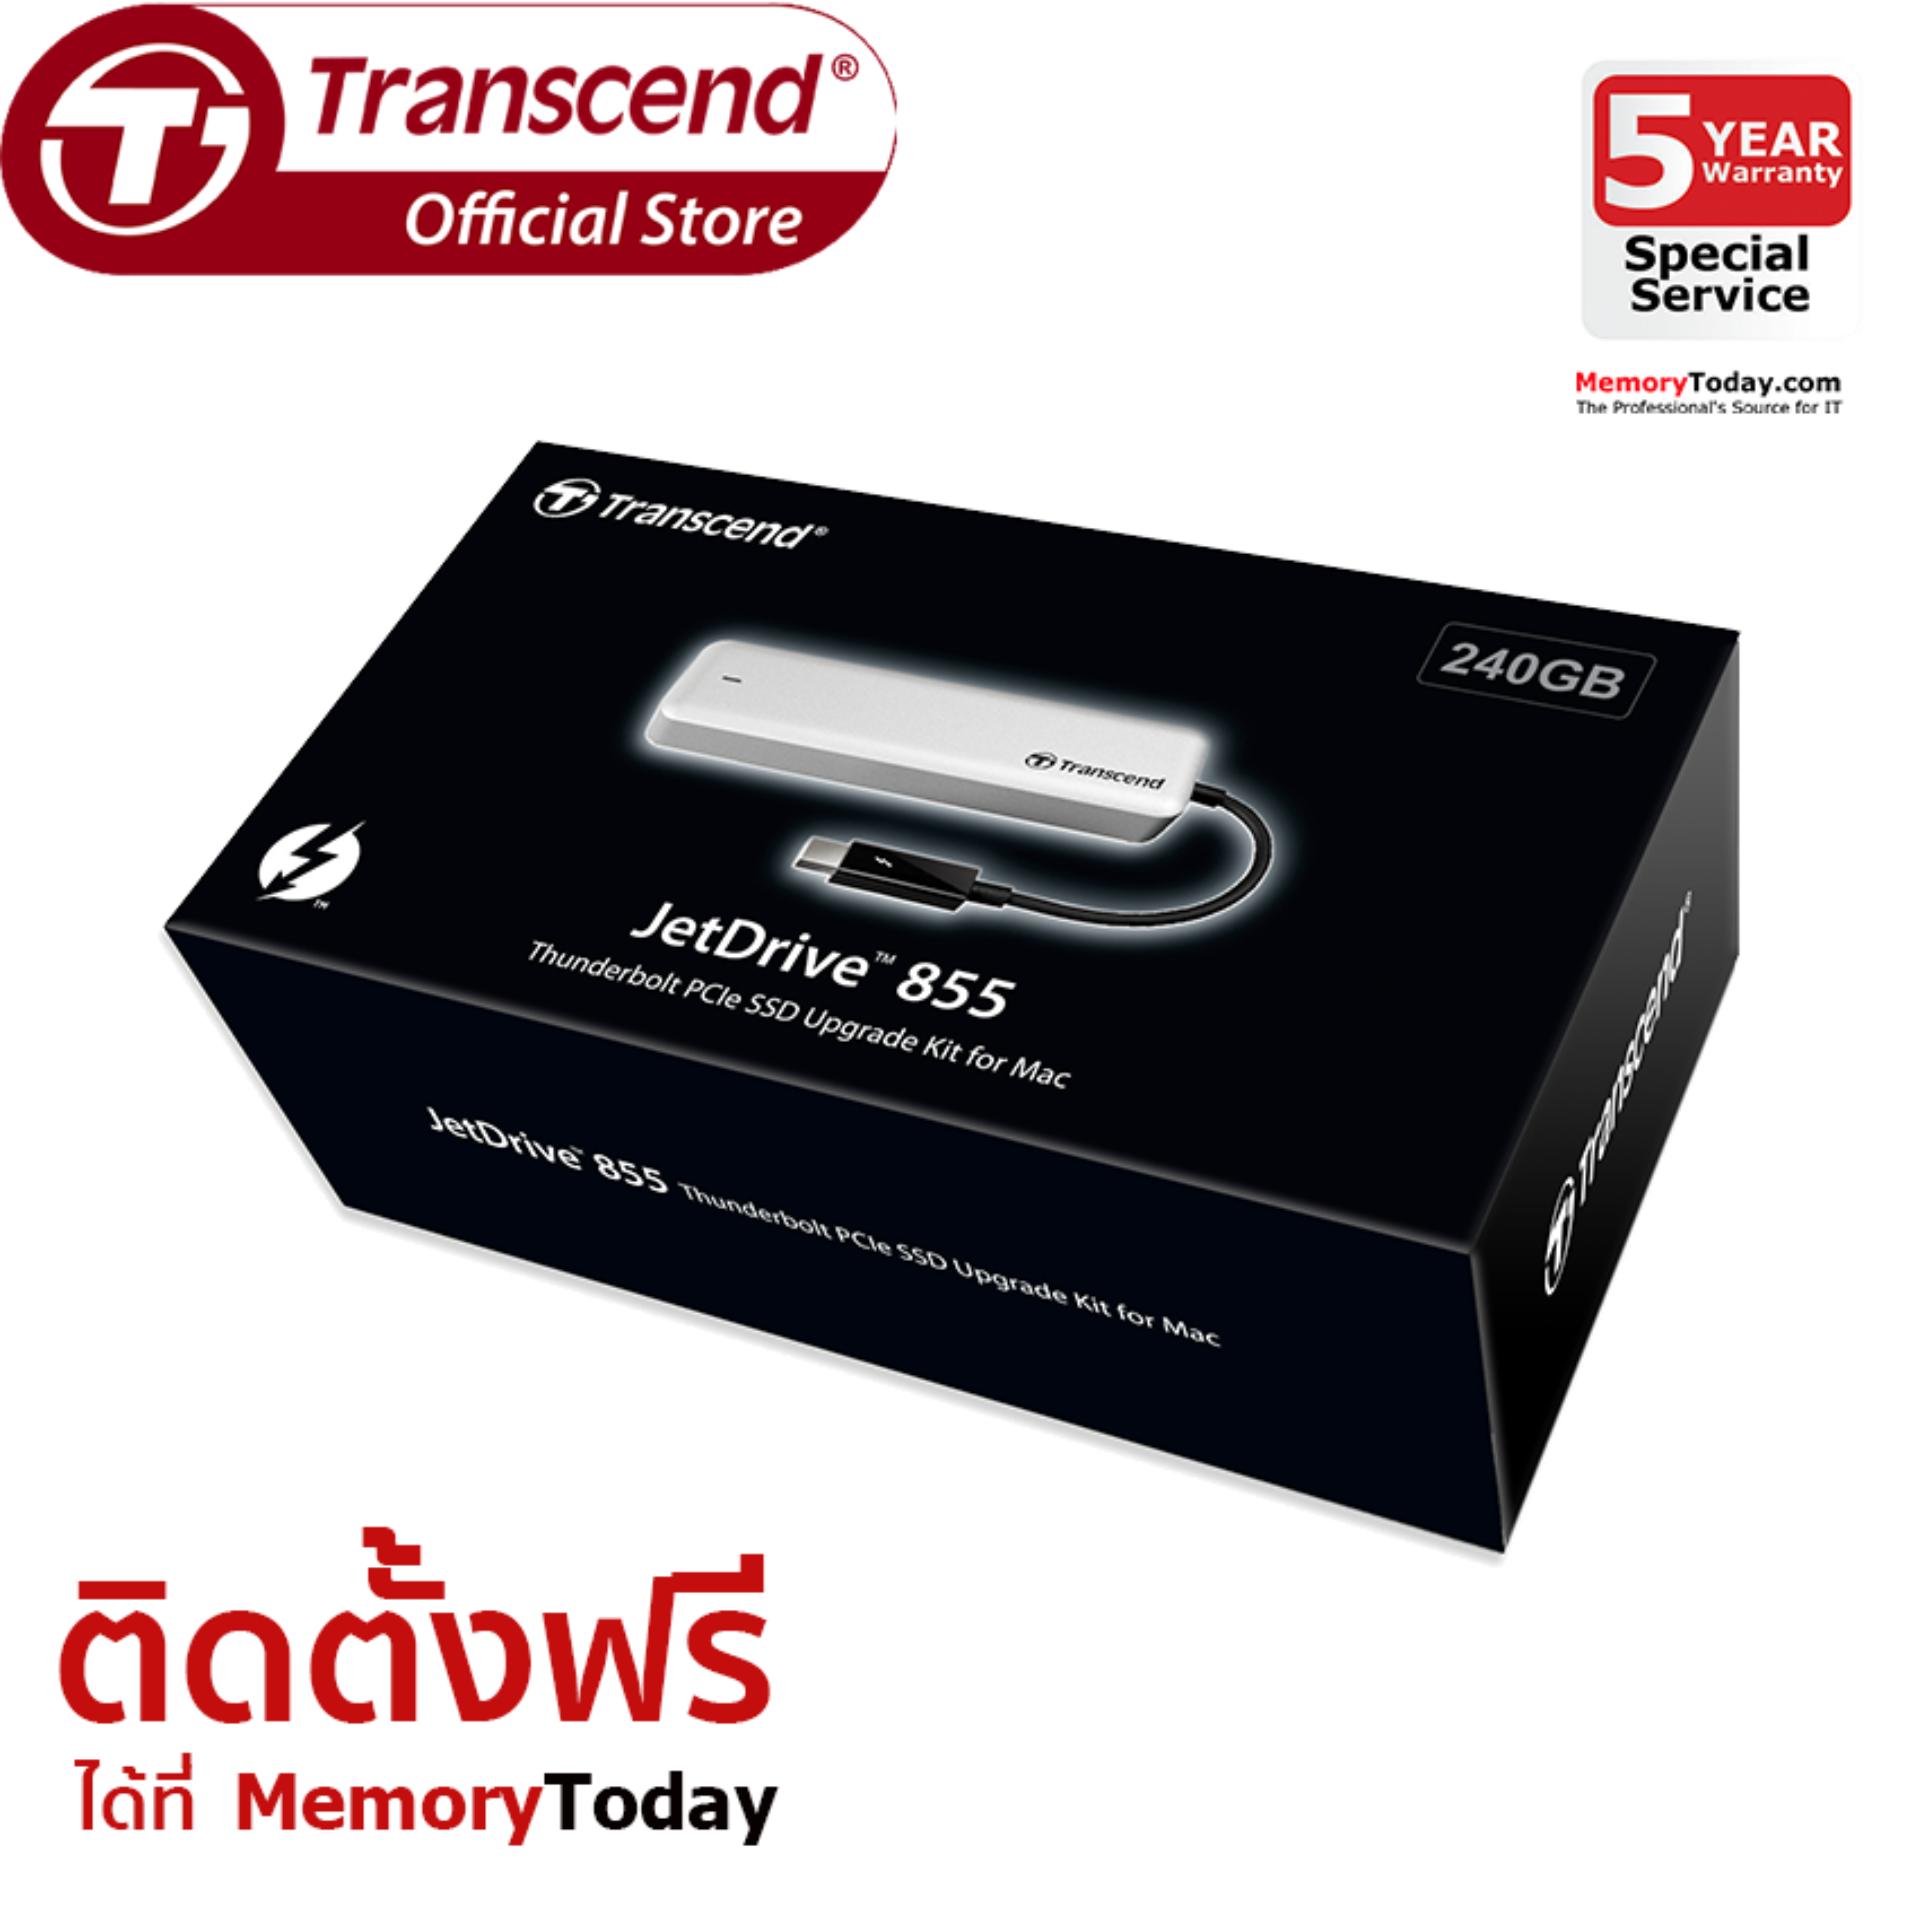 Transcend JetDrive 855 SSD Upgrade Kits for Mac 240GB (TS240GJDM855)